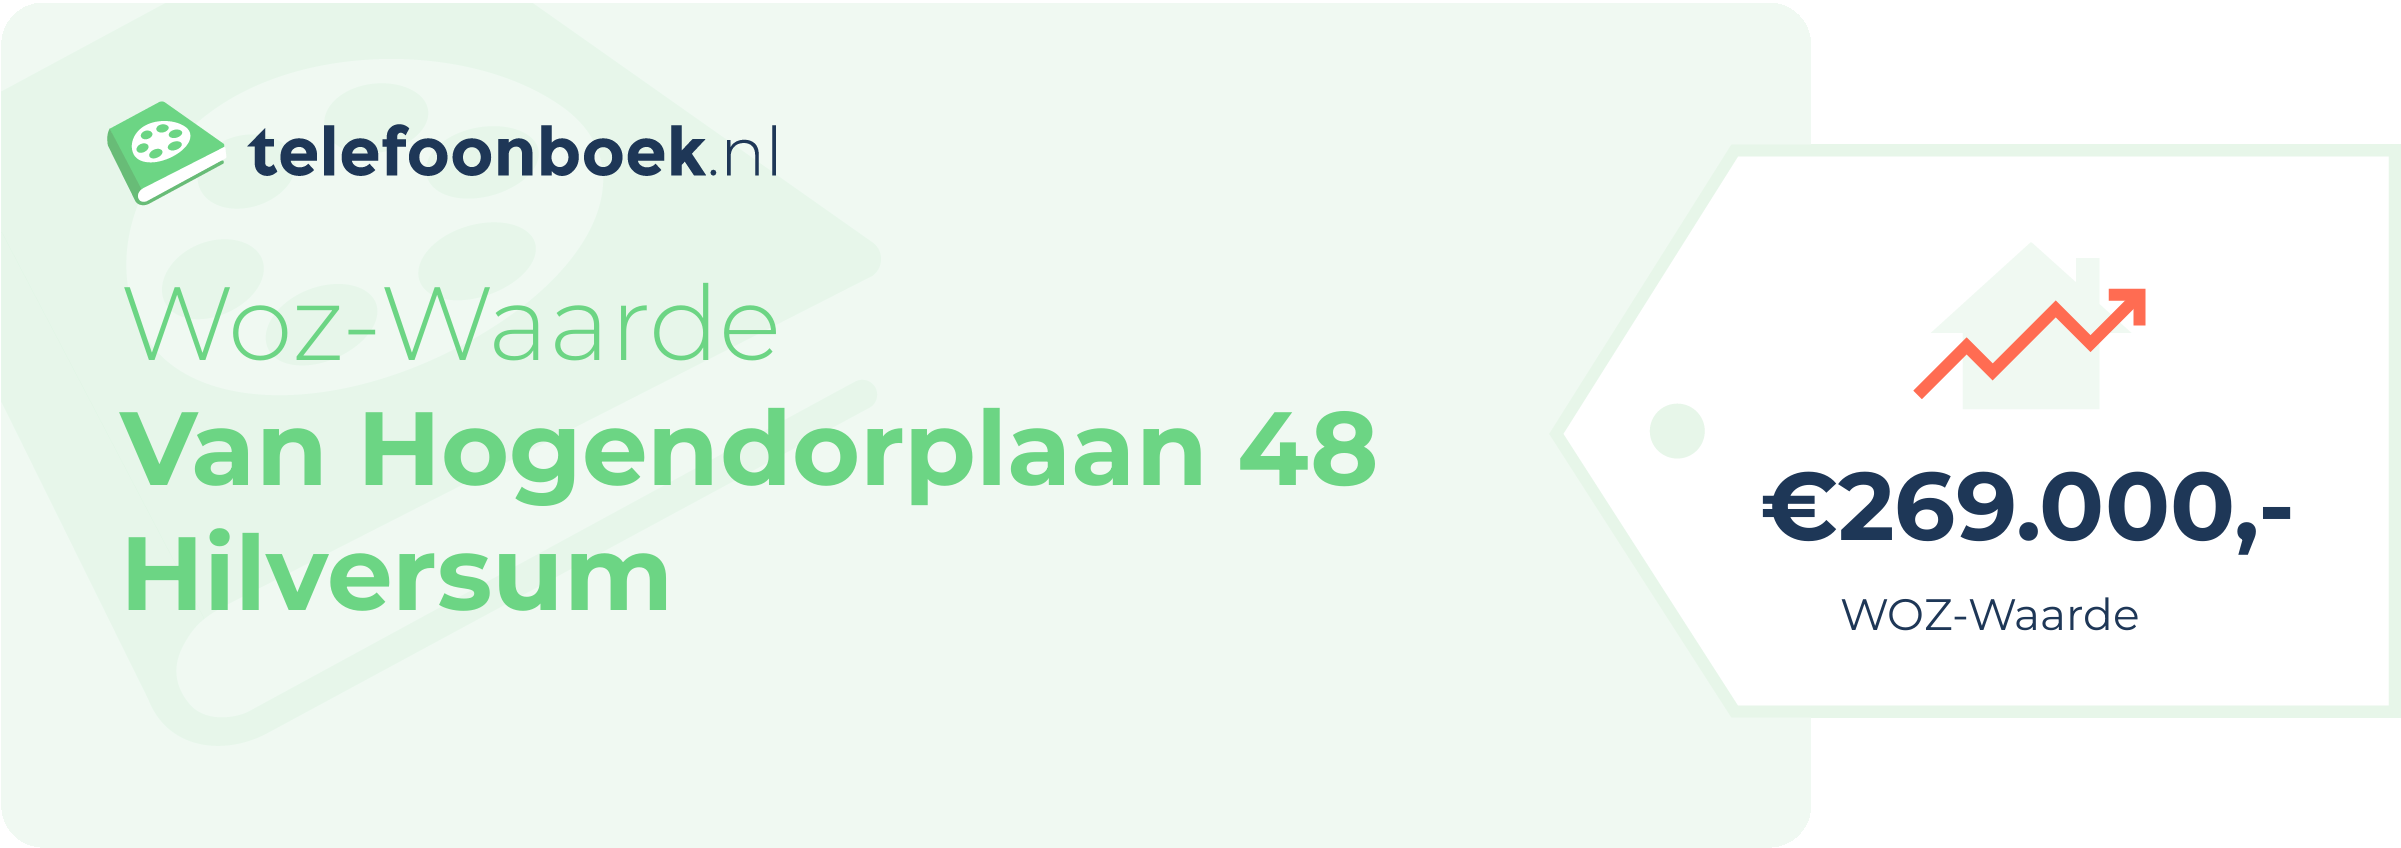 WOZ-waarde Van Hogendorplaan 48 Hilversum